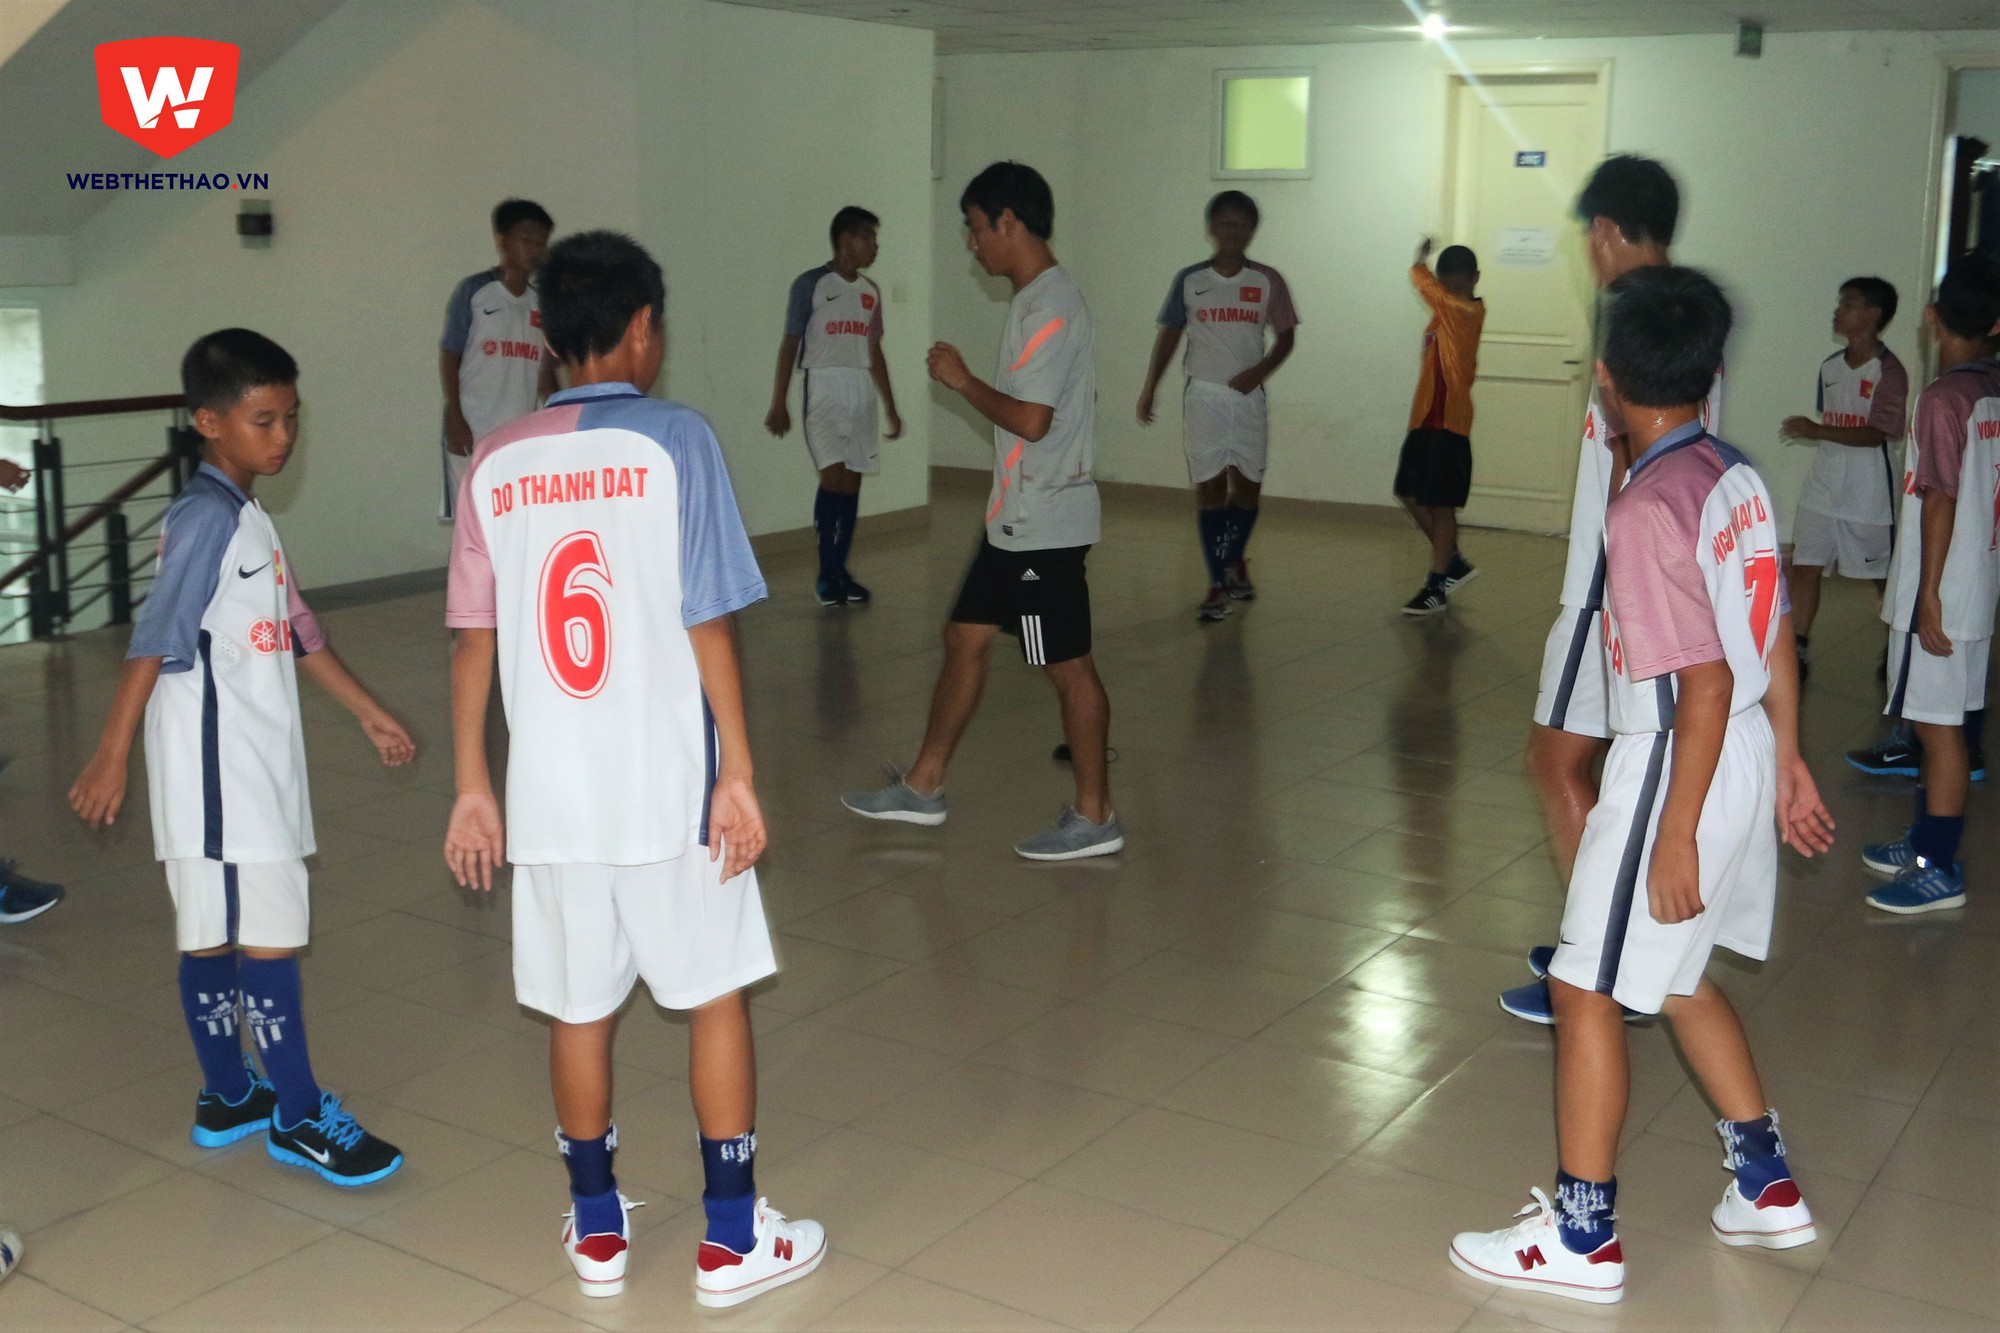 Sau bài chạy, HLV Huy Hoàng cho các học trò vận động tại chỗ.